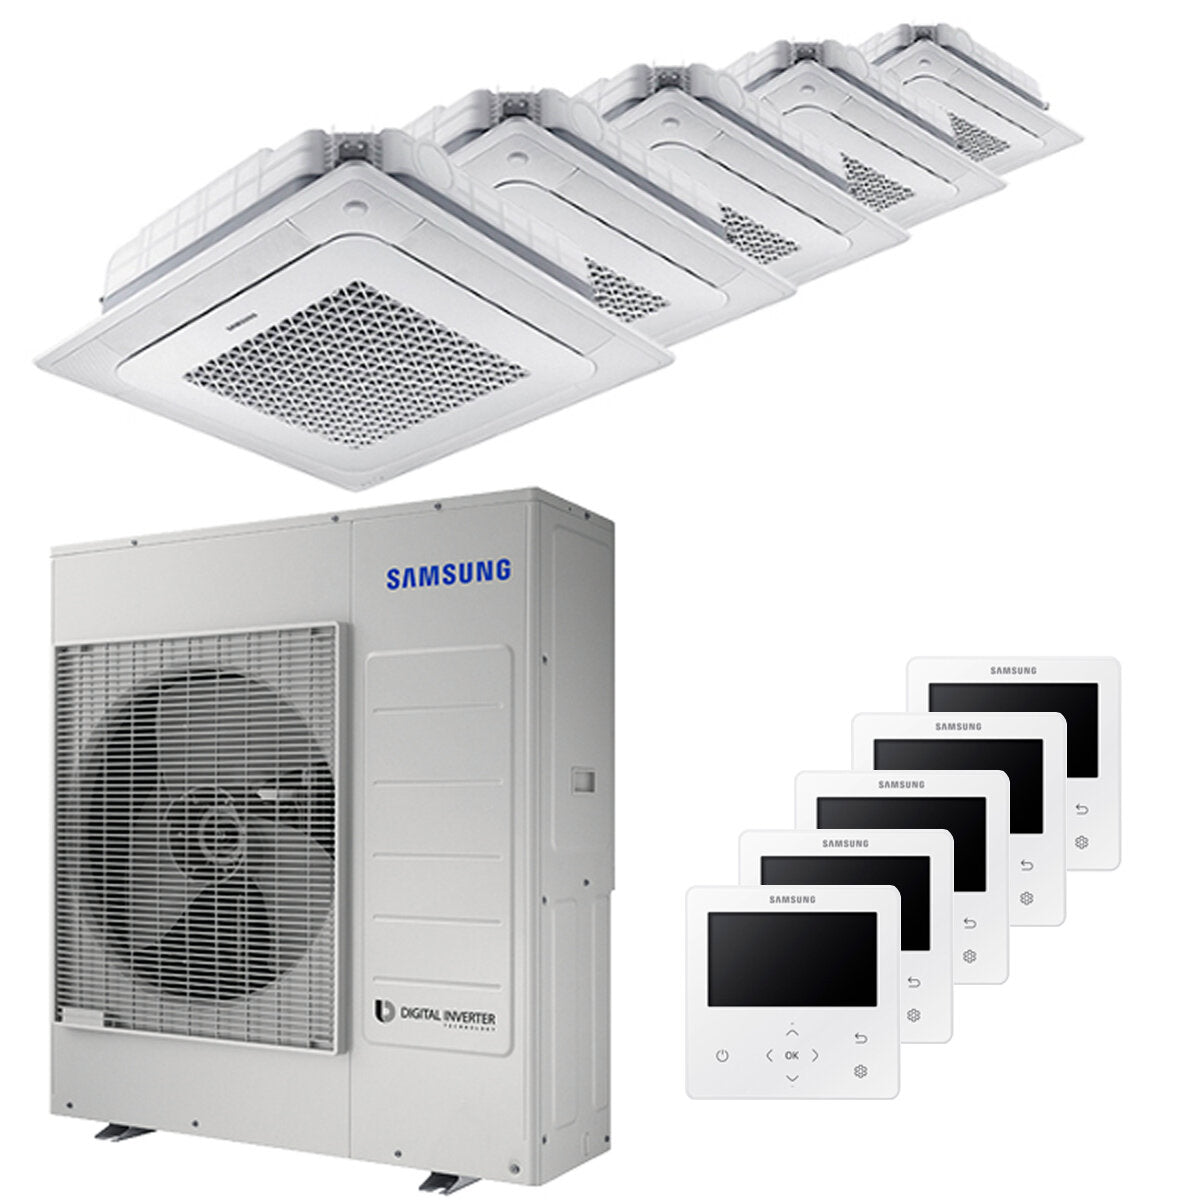 Samsung Air conditioner Windfree 4-way penta split 7000 + 9000 + 9000 + 9000 + 12000 BTU inverter A ++ outdoor unit 10.0 kW